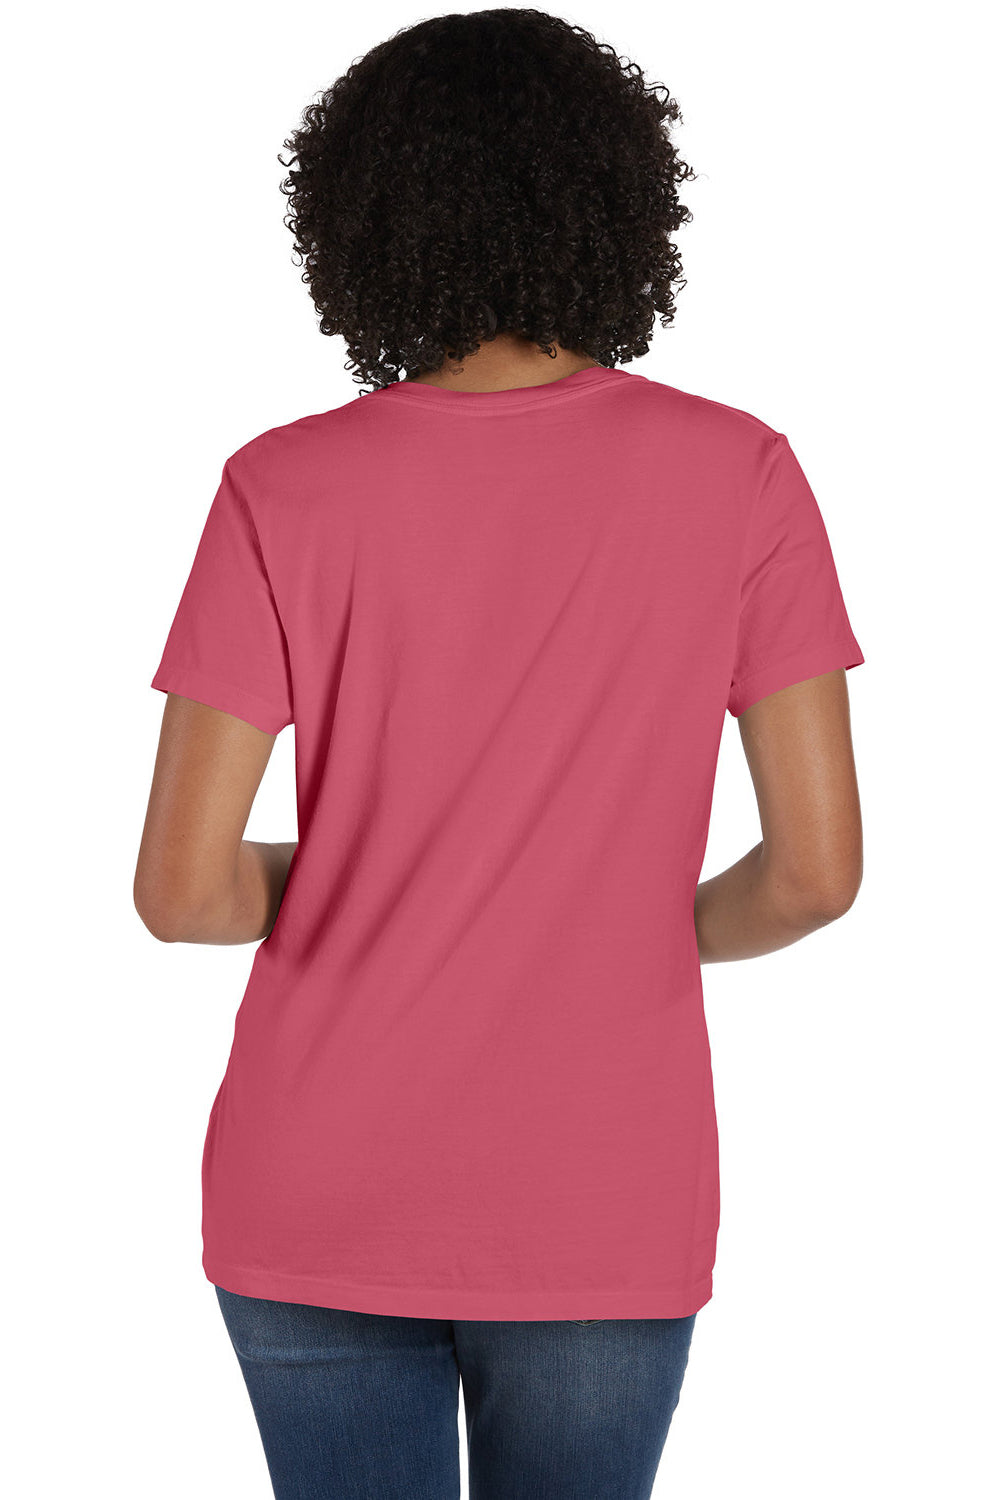 ComfortWash By Hanes GDH125 Mens Garment Dyed Short Sleeve V-Neck T-Shirt Coral Craze Model Back